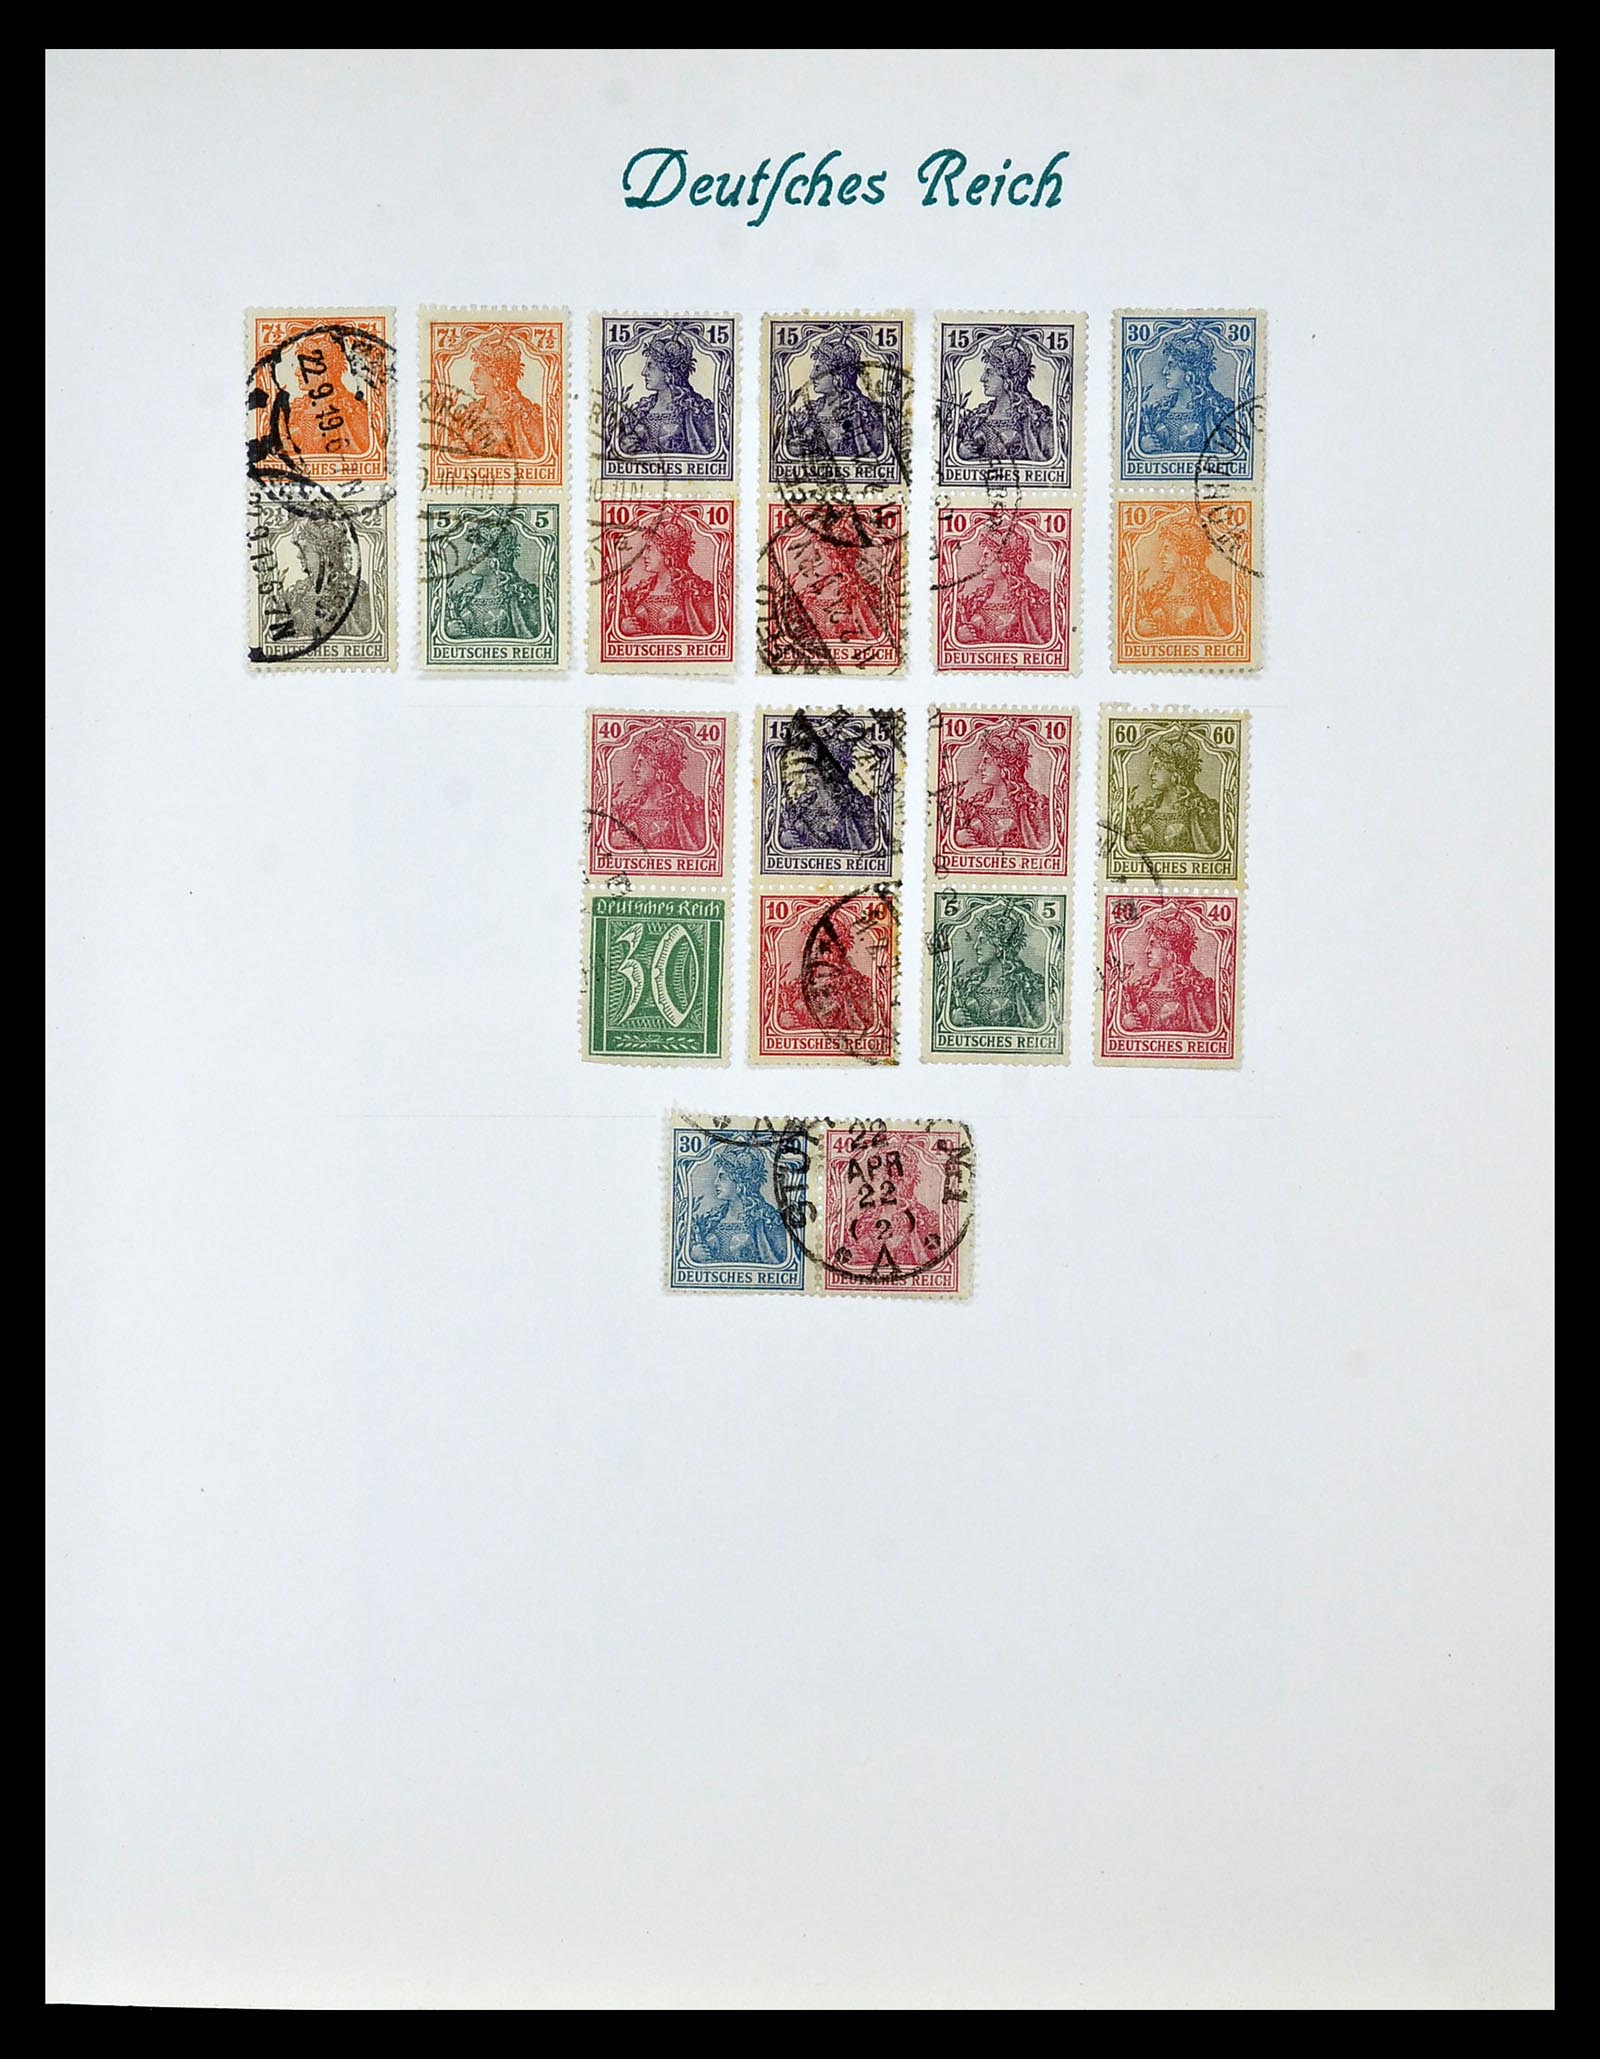 35039 007 - Postzegelverzameling 35039 Duitse Rijk combinaties 1910-1941.